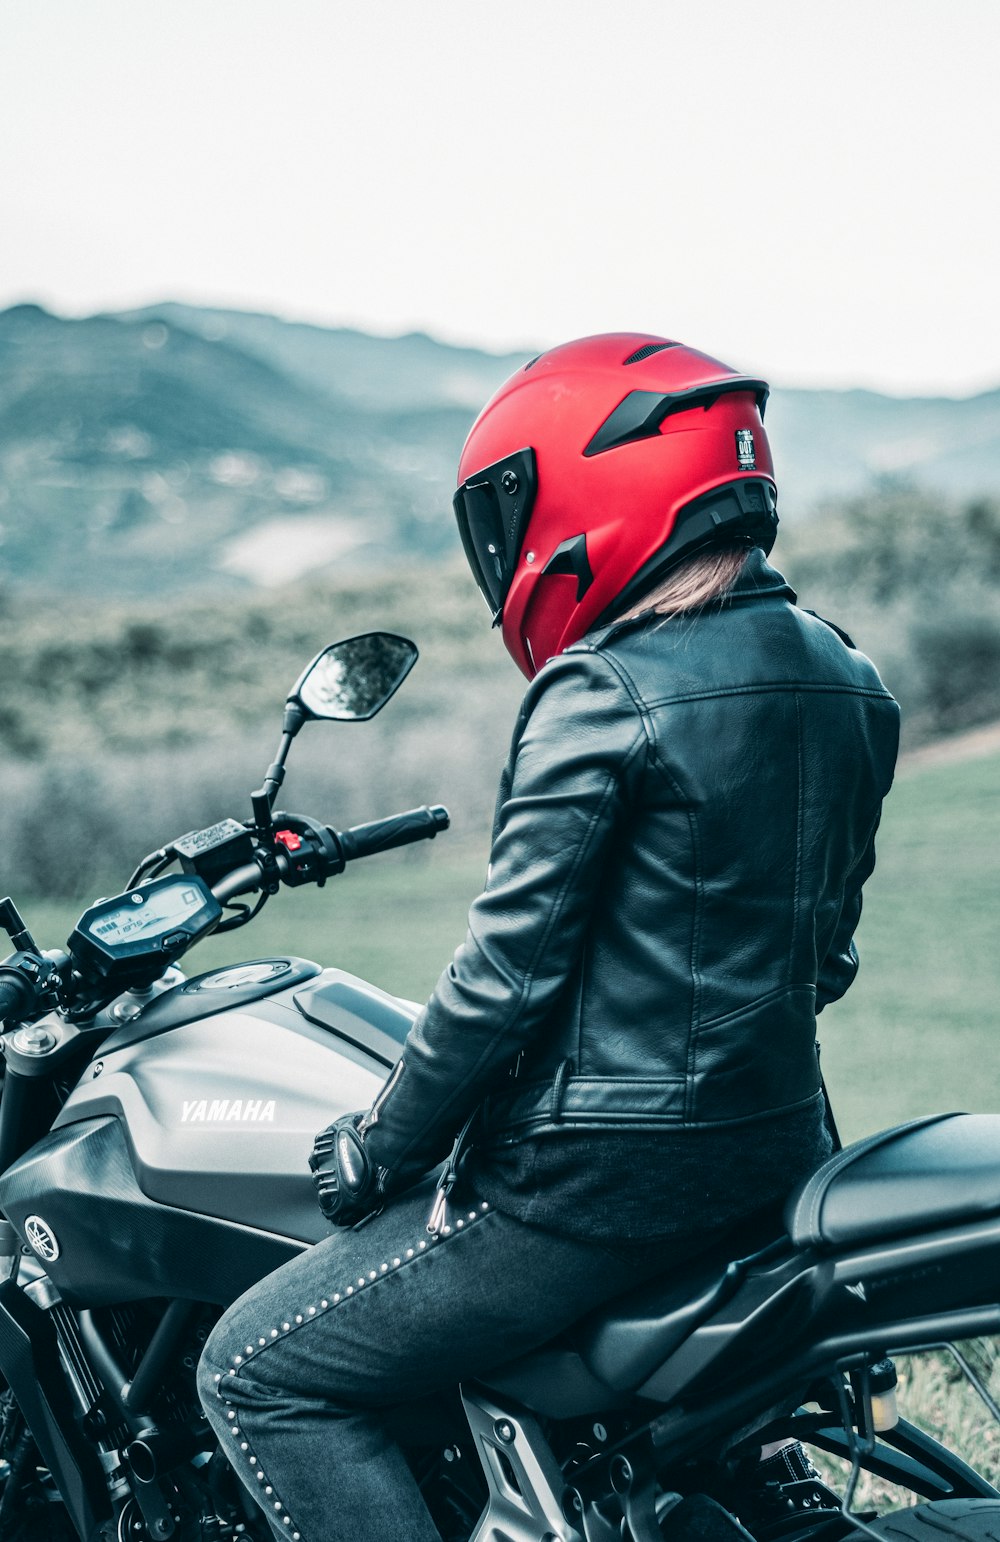 검은 가죽 재킷을 입은 남자 빨간 헬멧을 타고 검은 혼다 오토바이